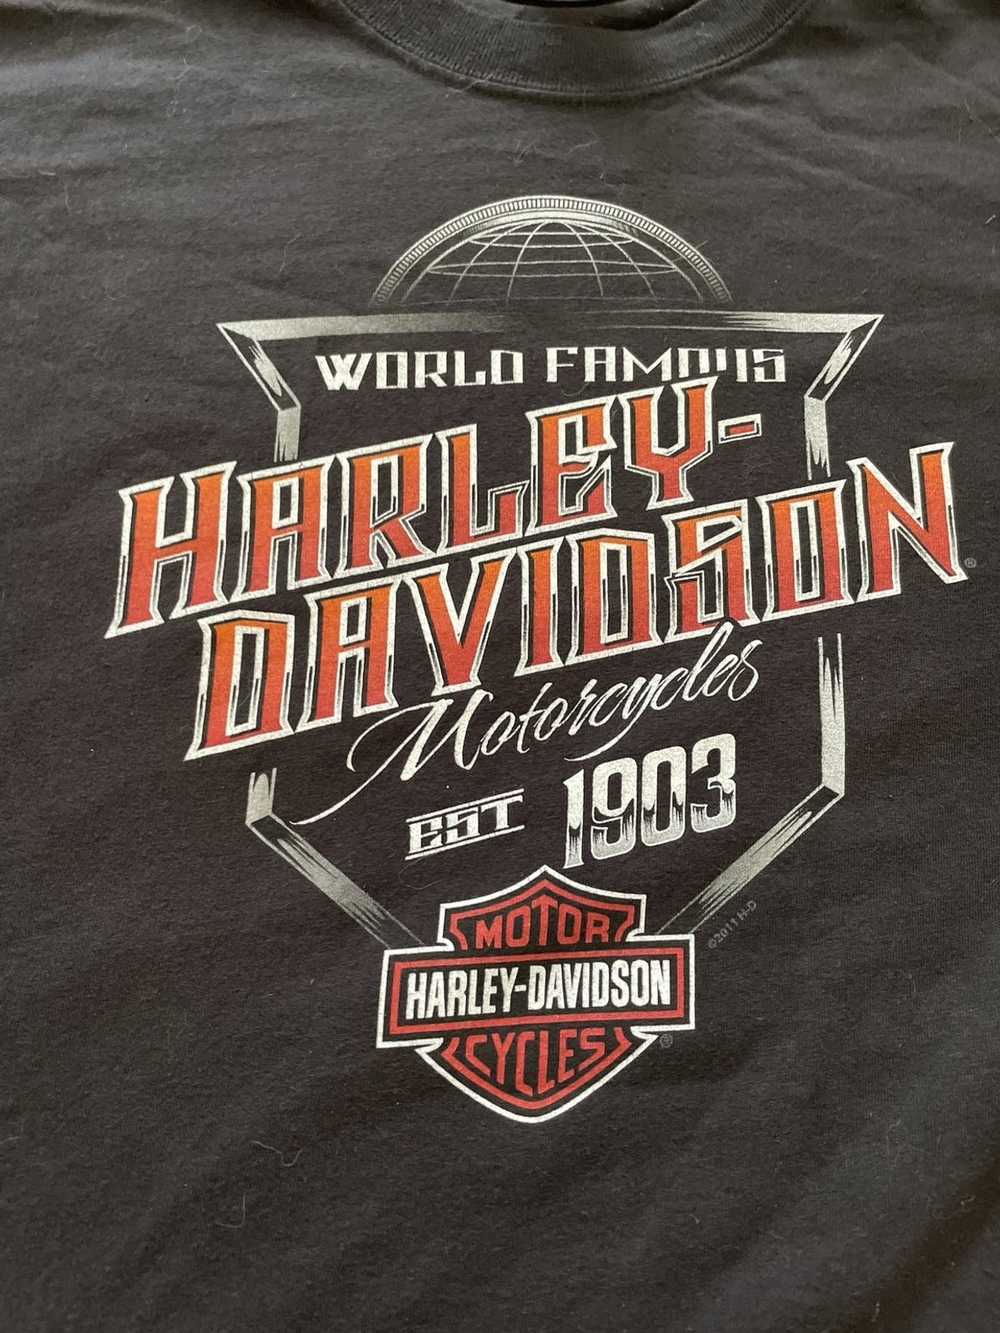 Harley Davidson Vintage Harley Davidson - image 3